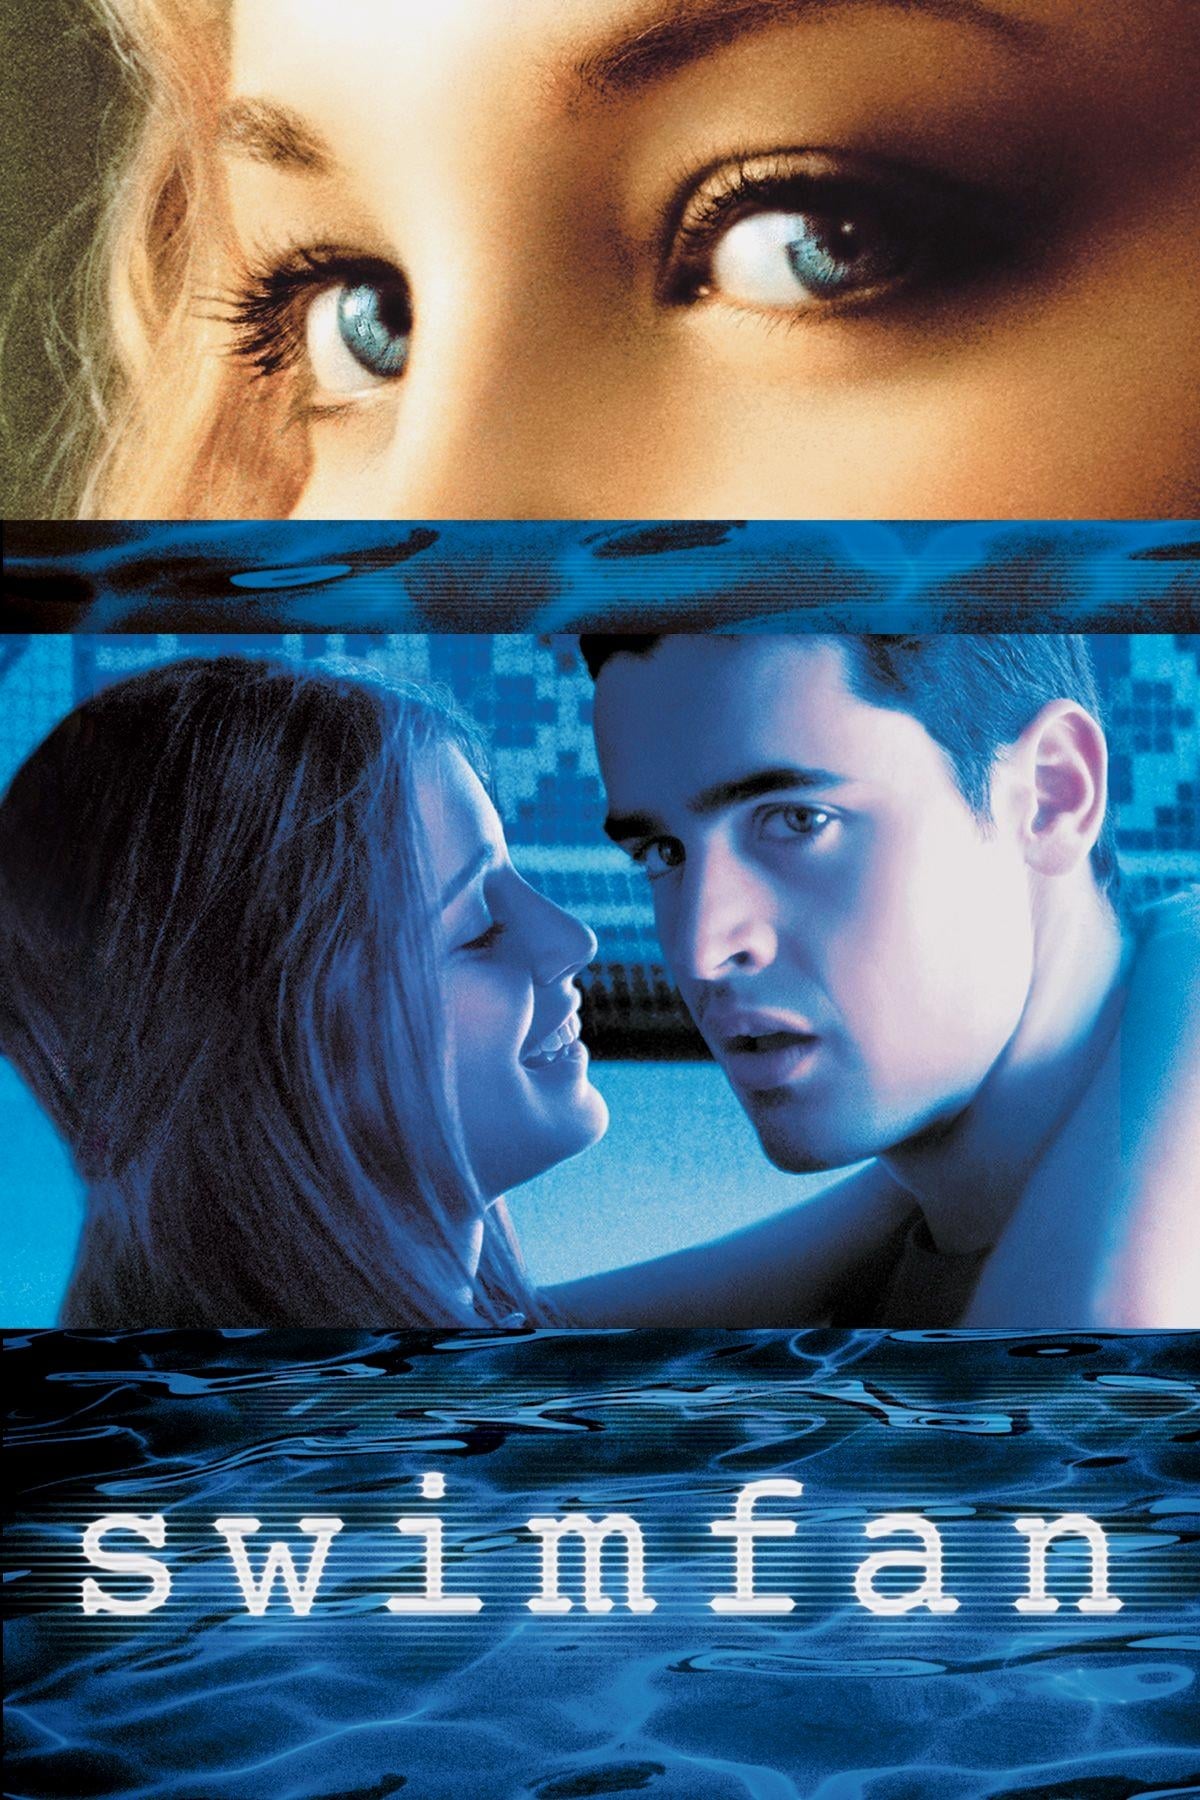 Swimfan, la fille de la piscine (2002)